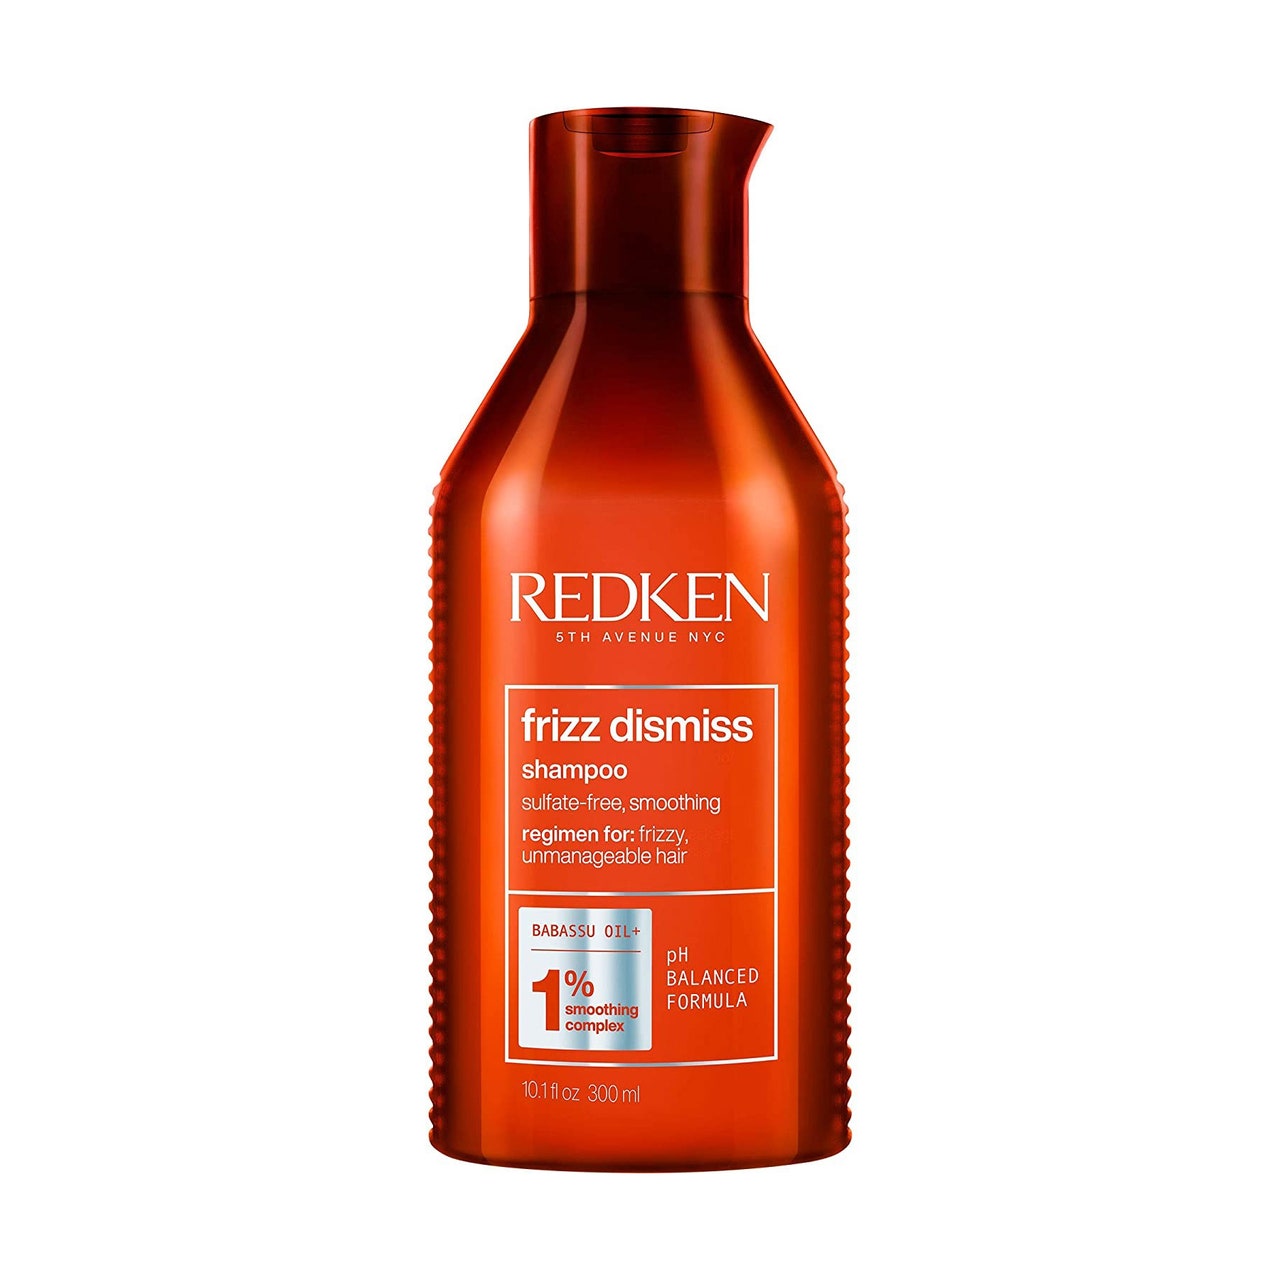 Orangefarbene Flasche des Redken Frizz Dismiss Shampoos auf weißem Hintergrund